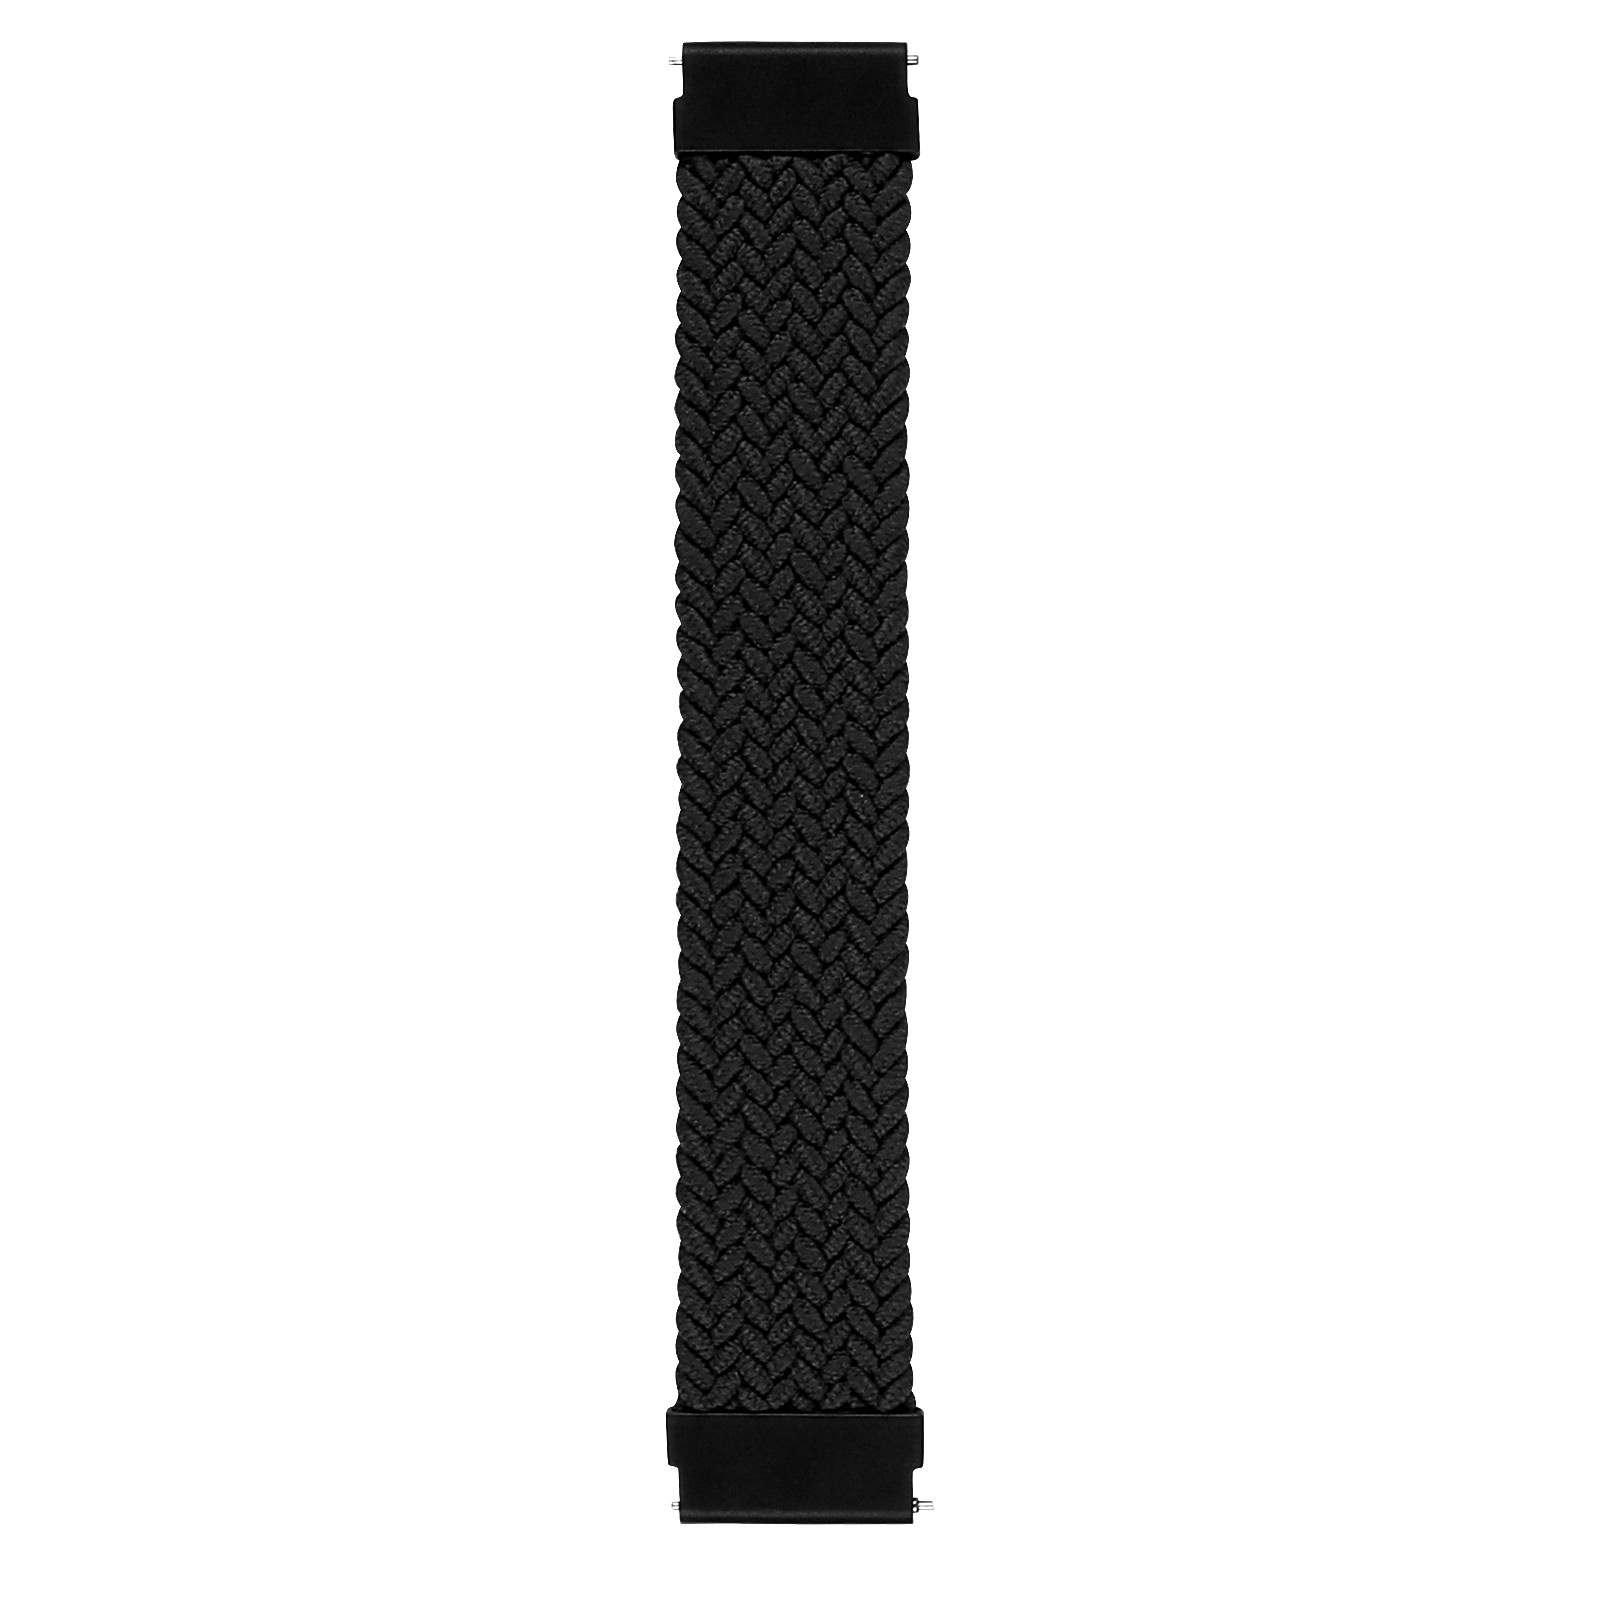 Samsung Galaxy Watch Nylon Braided Solo Strap - Black